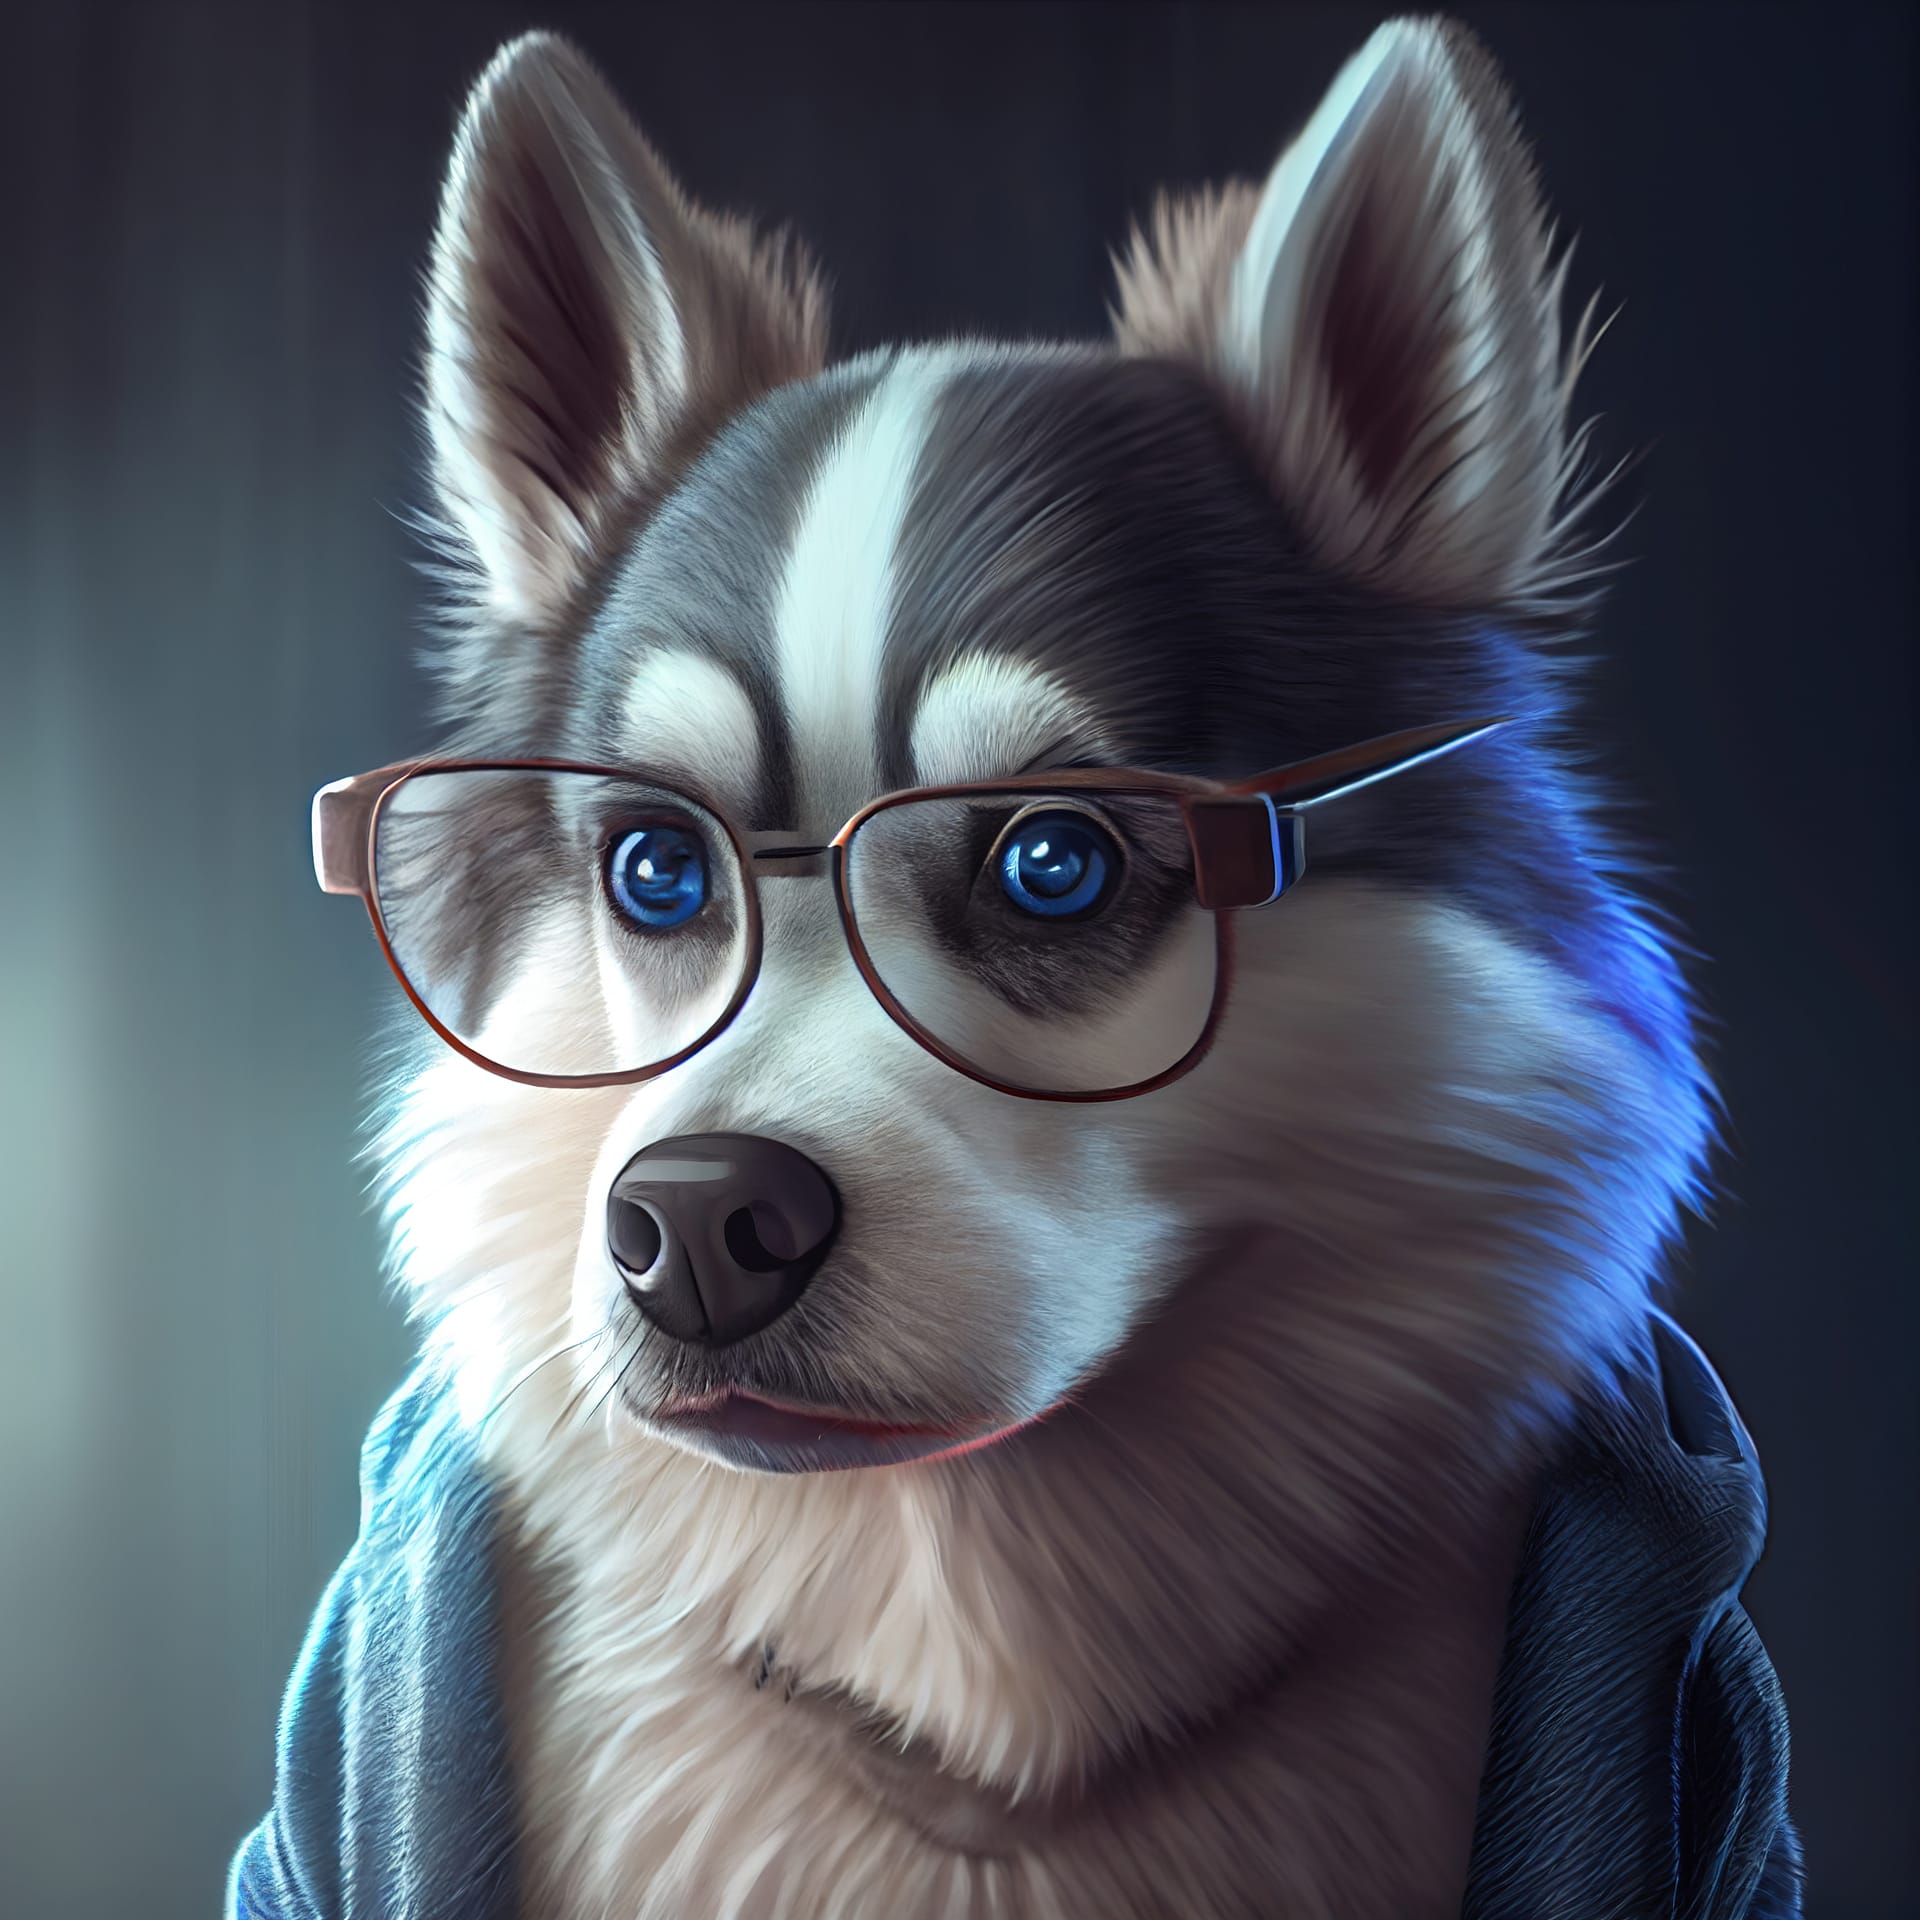 Dog images husky dog glasses